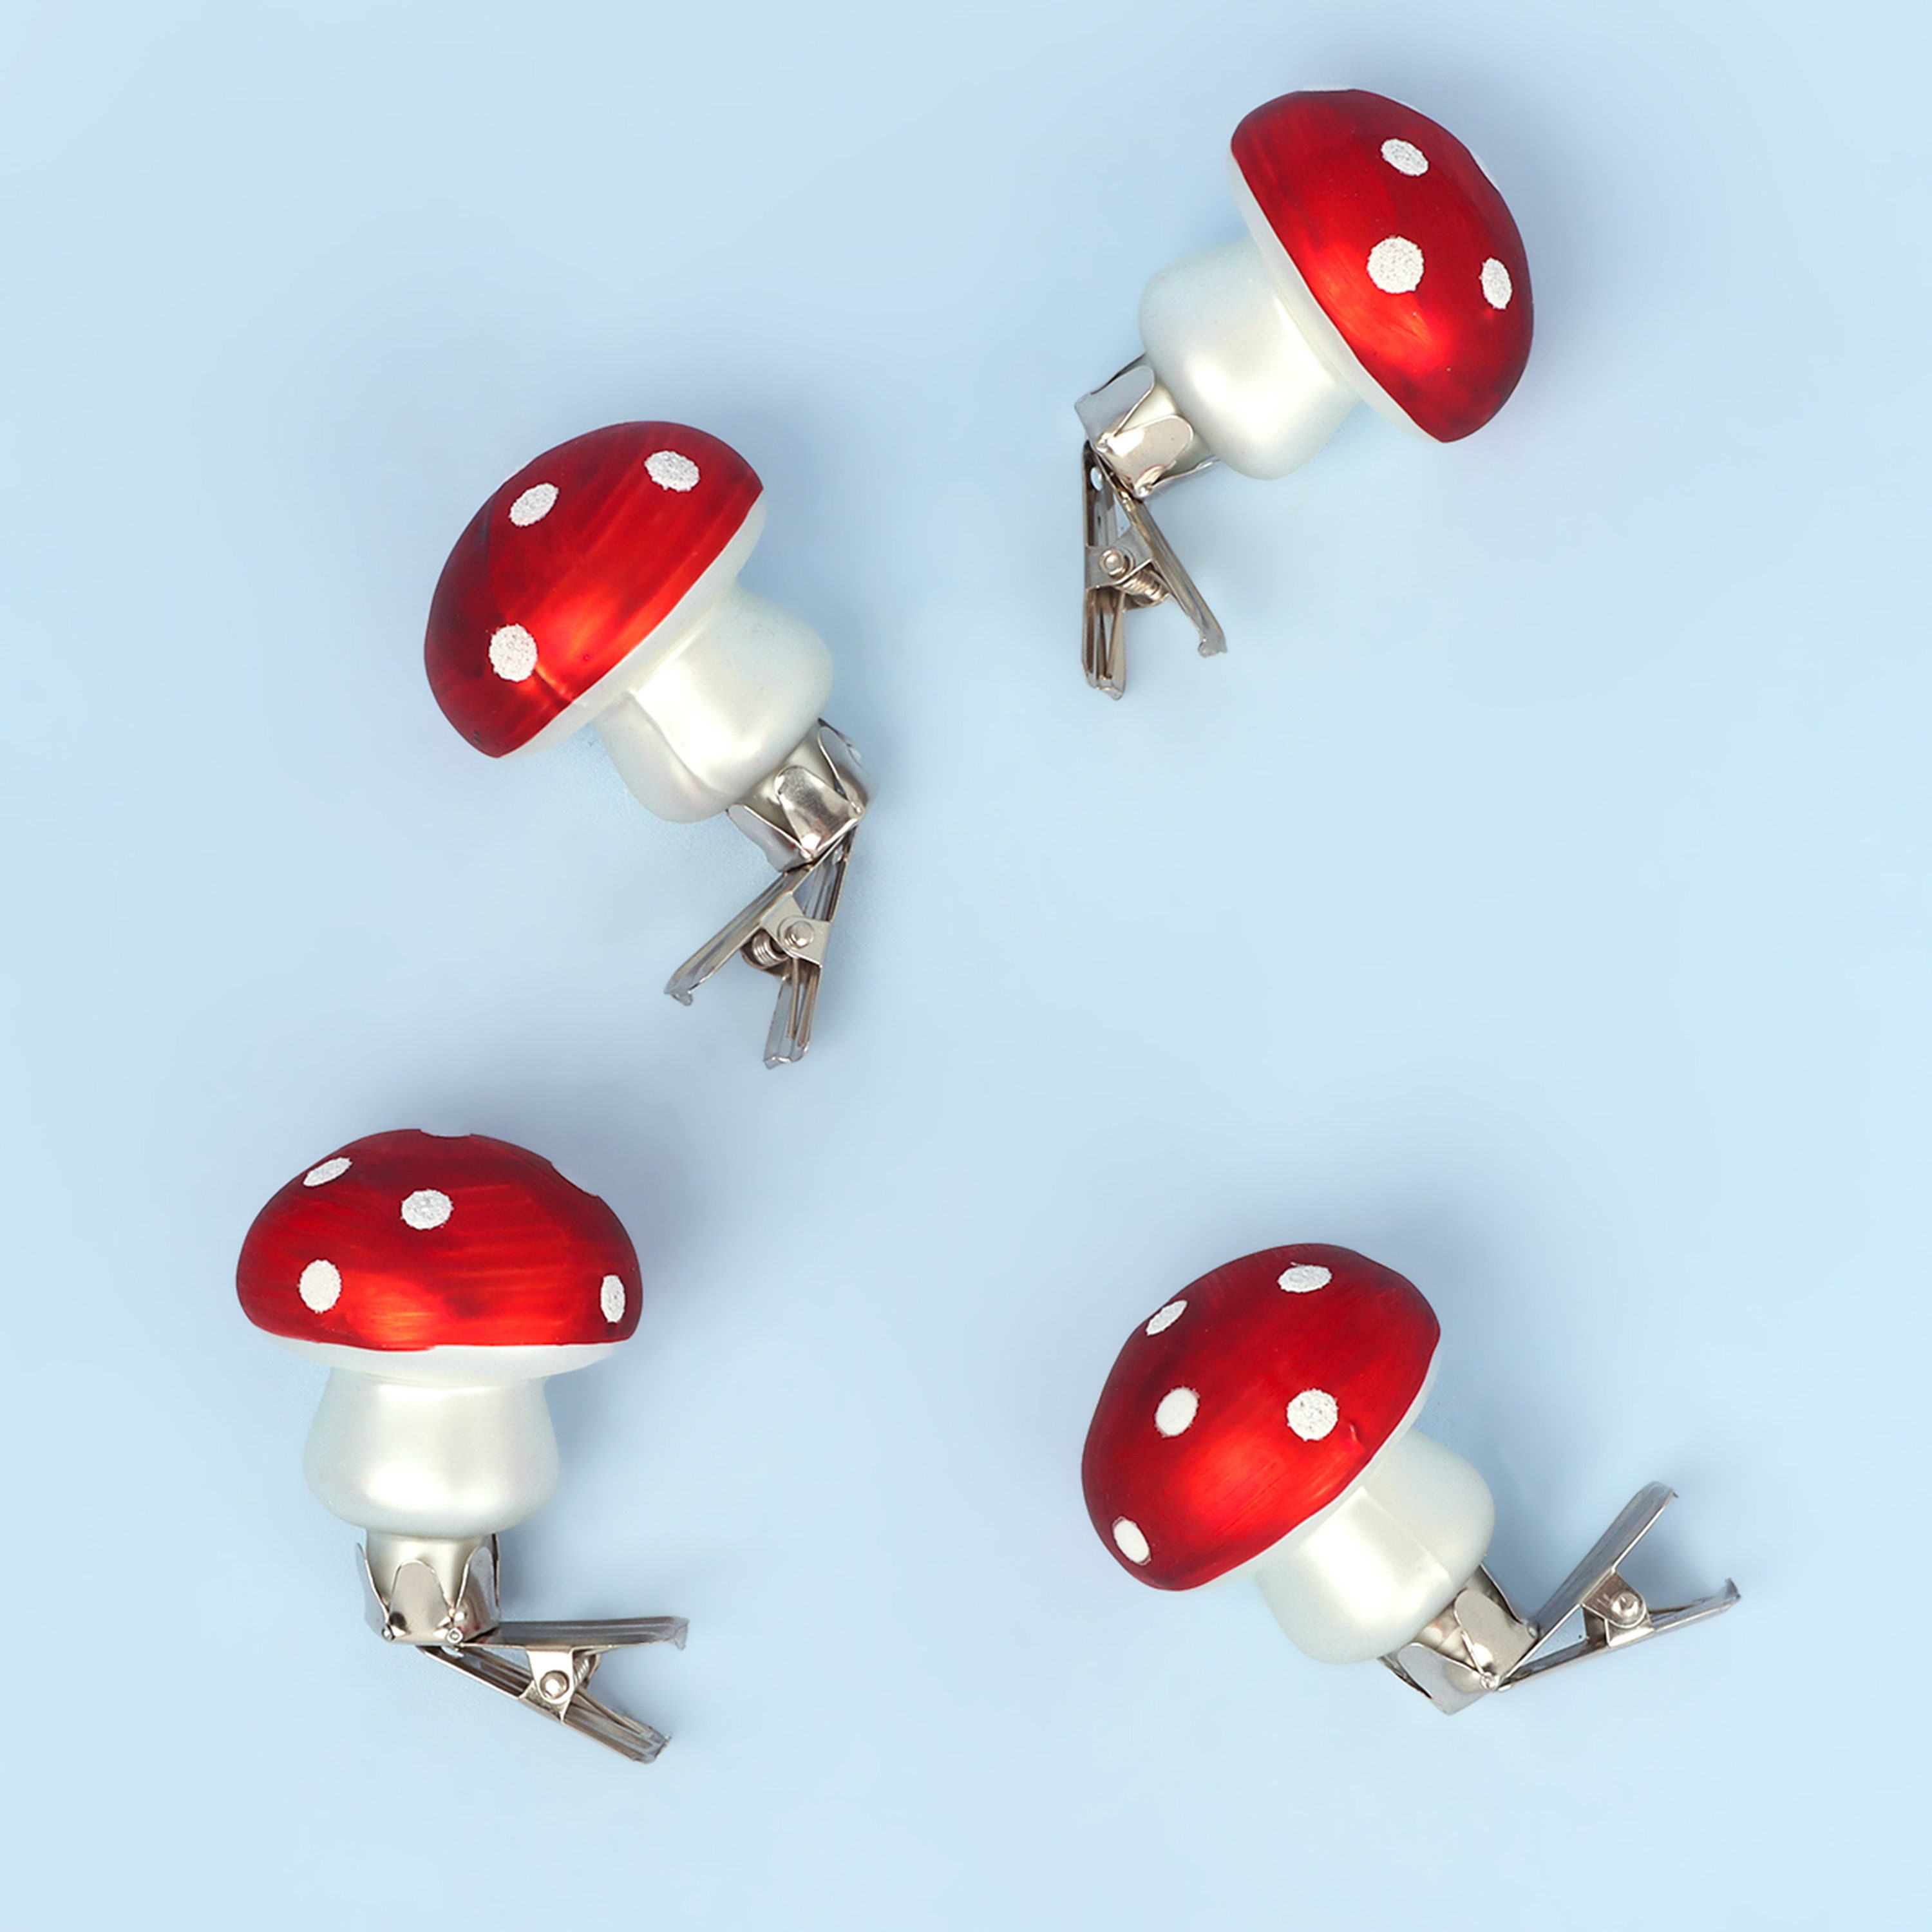 g. on X: why i found the cutest mushroom grinder..functional decor   / X